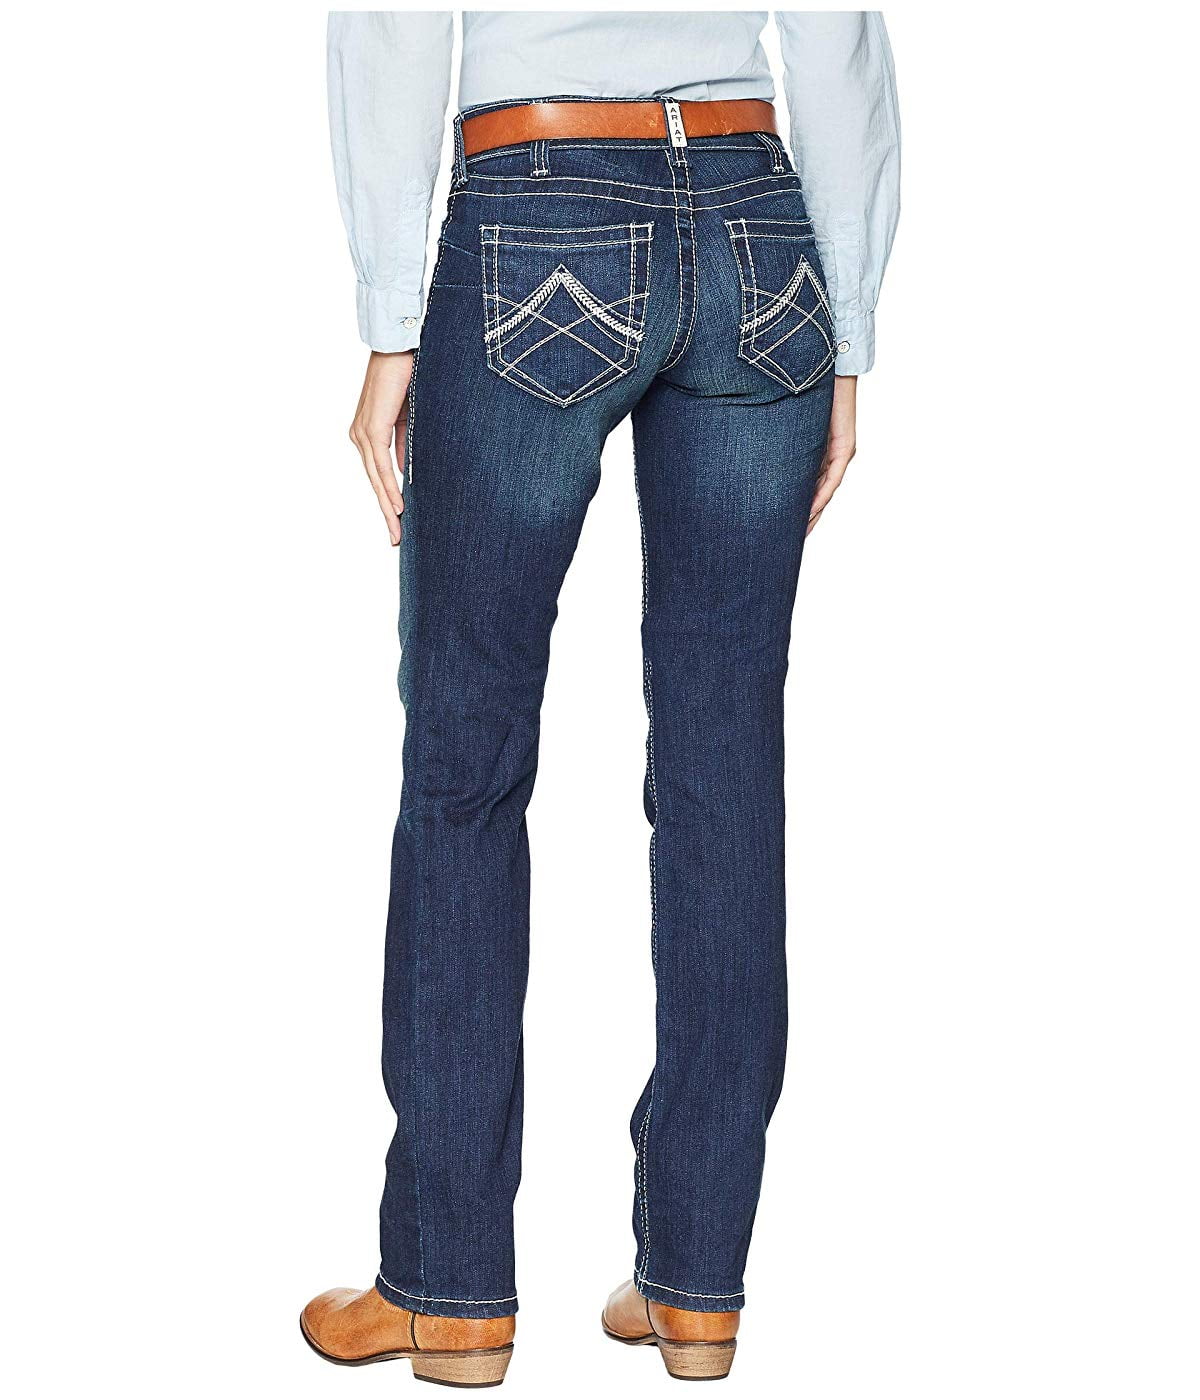 Ariat - Ariat R.E.A.L. Straight Icon Jeans Ocean - Walmart.com ...